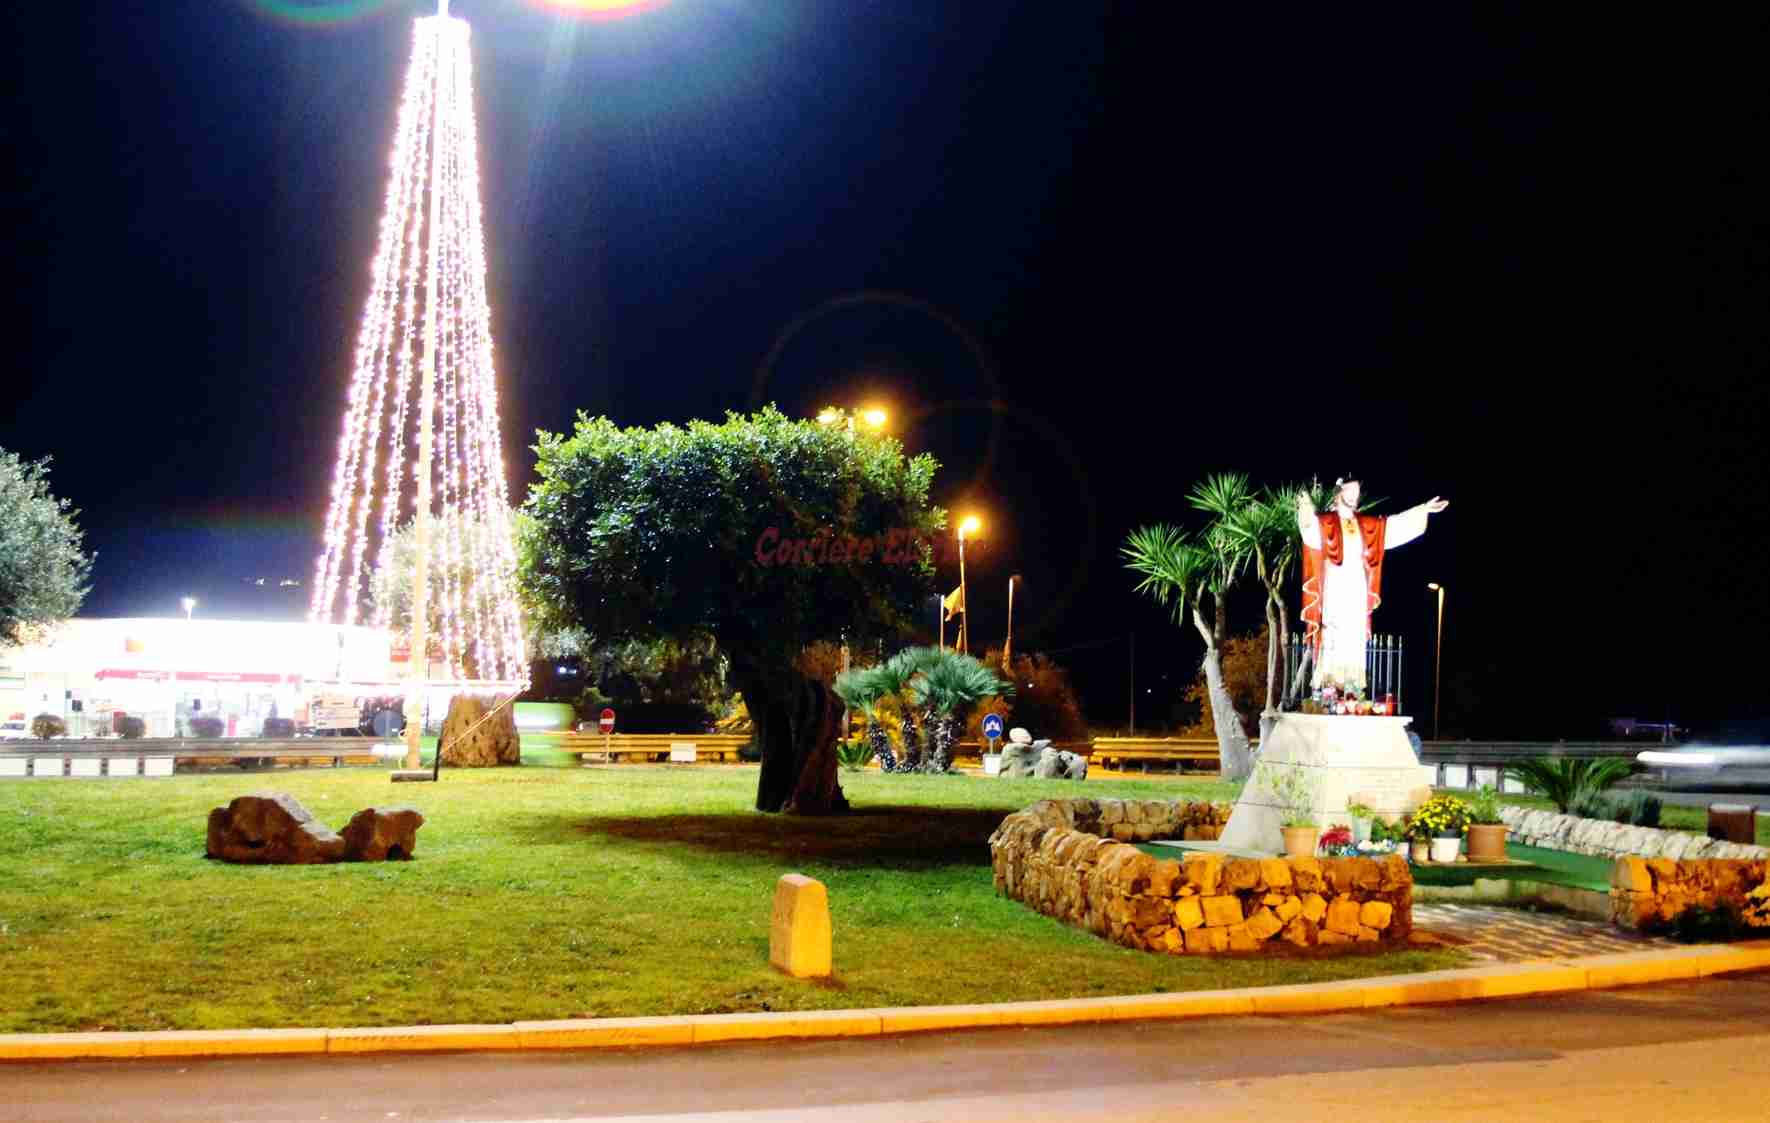 Spunta un albero di Natale nella rotatoria più bella e ben tenuta della città